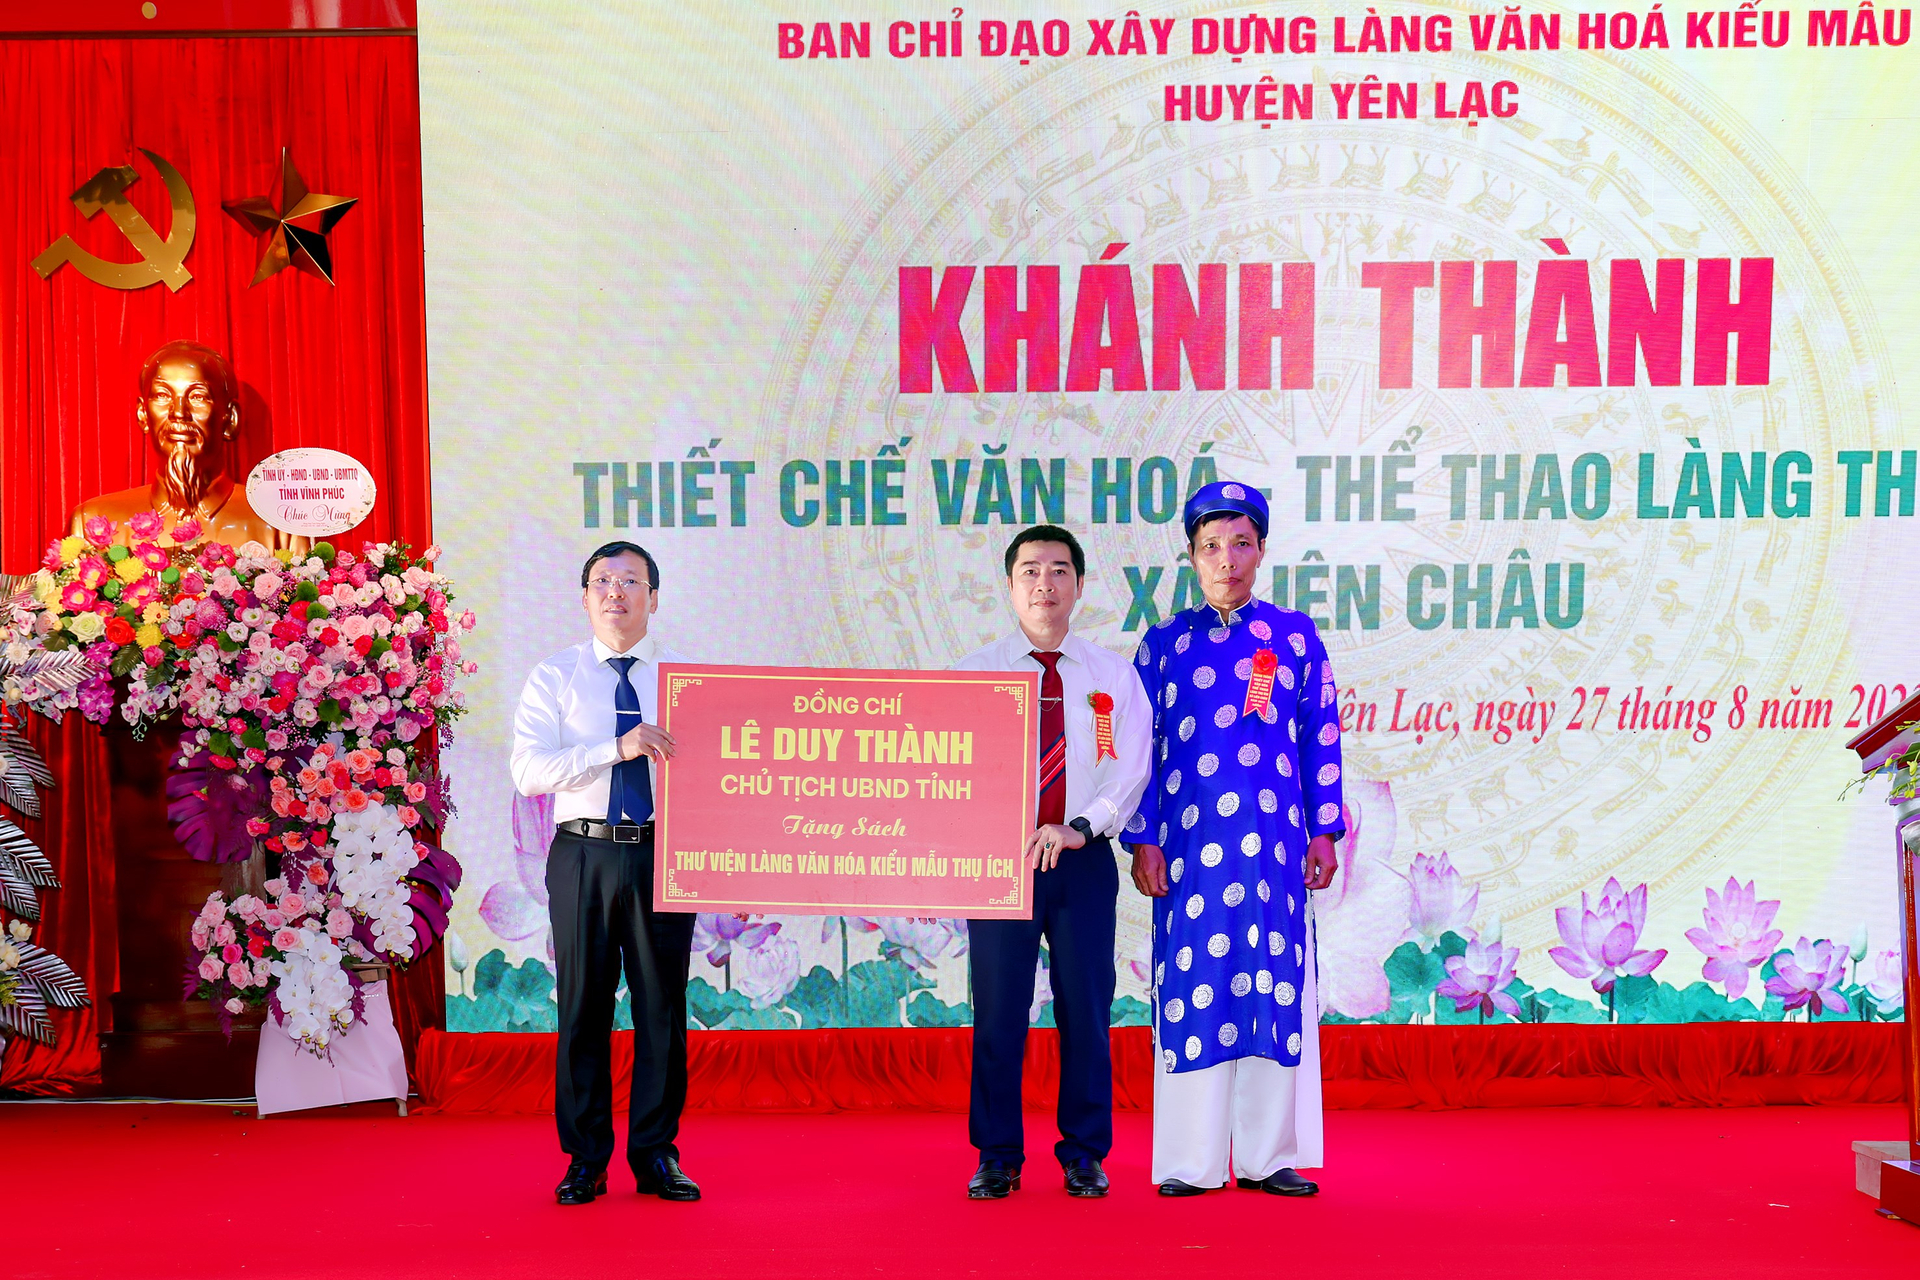 Chủ tịch UBND tỉnh Lê Duy Thành tặng sách cho Thư viện Làng văn hóa Thụ Ích. Ảnh: vinhphuc.gov.vn